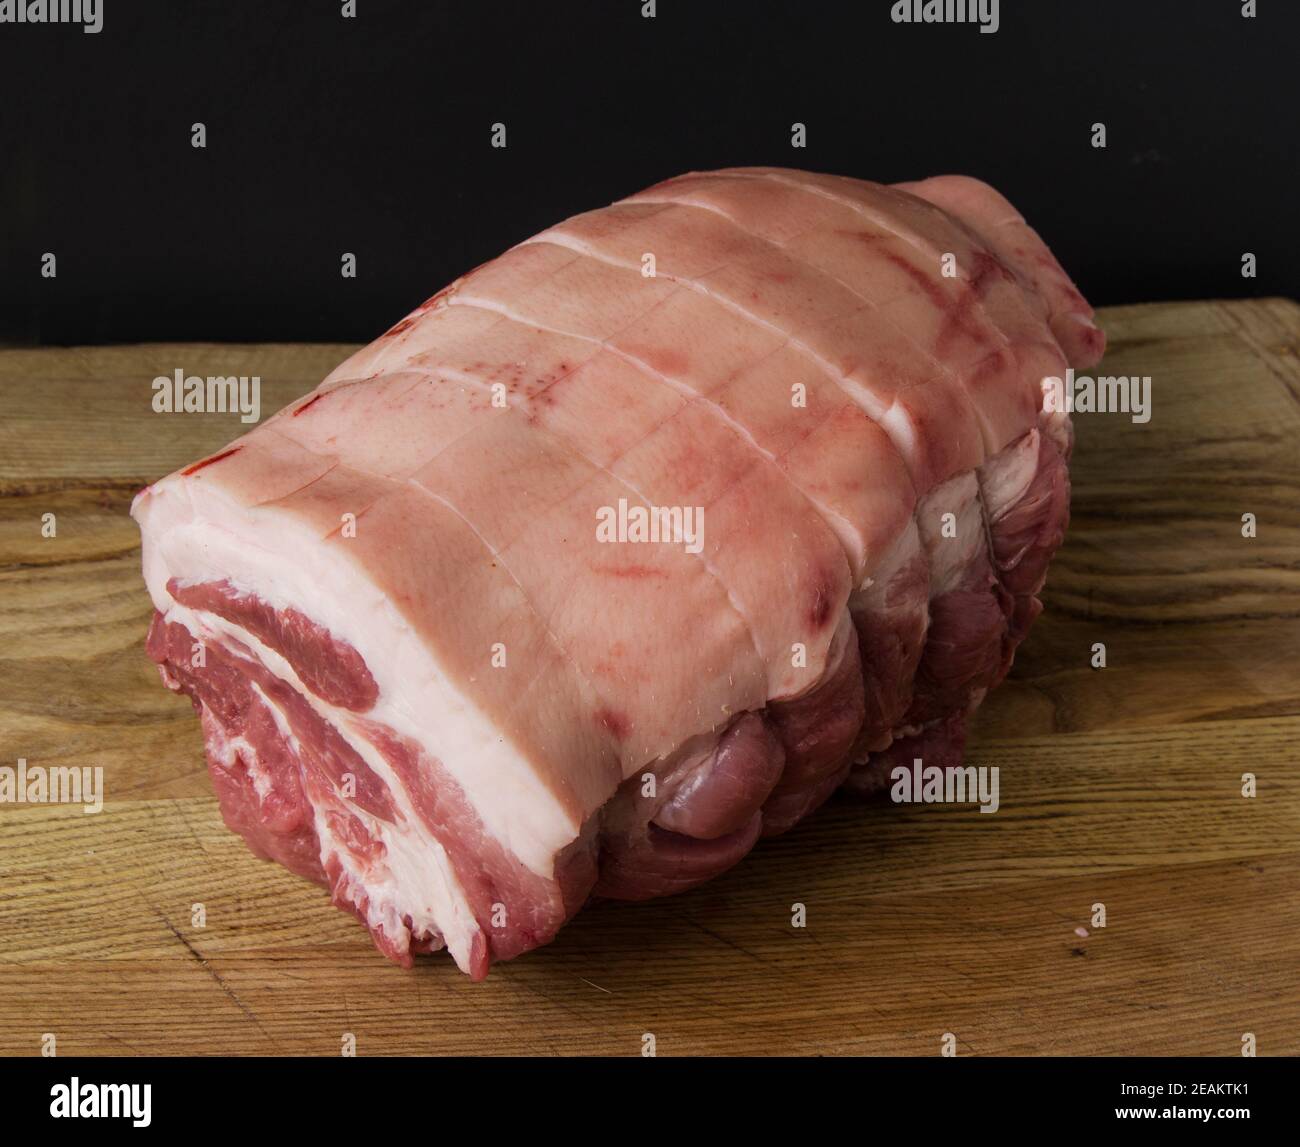 Rohes Schweinefleisch Joint fotografiert auf einem hölzernen Schneidebrett mit Schwarzer Hintergrund Stockfoto